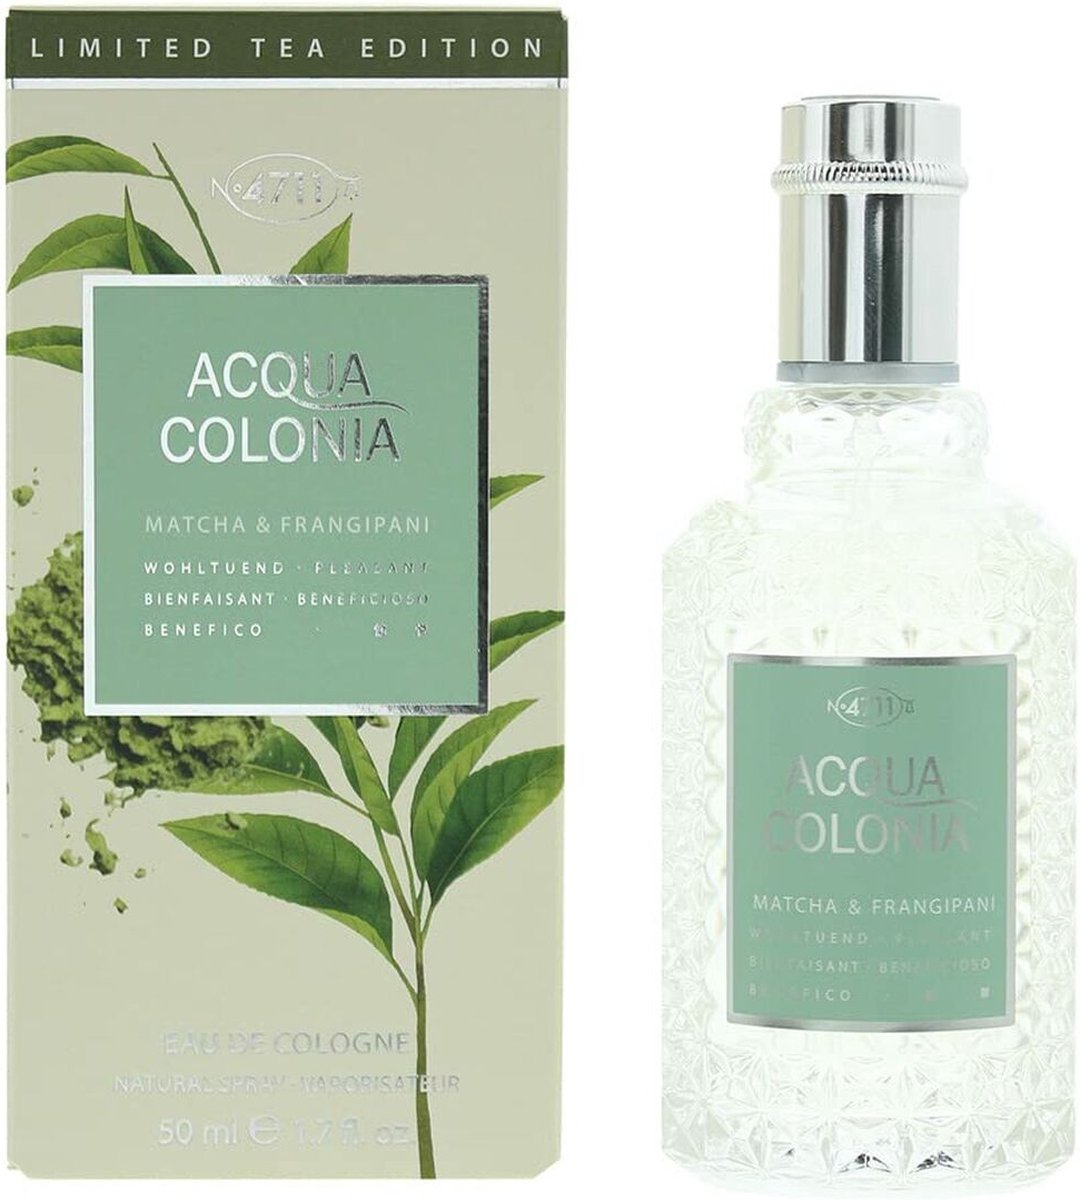 4711 Acqua Colonia Matcha & Fragipani Eau de cologne spray 50 ml